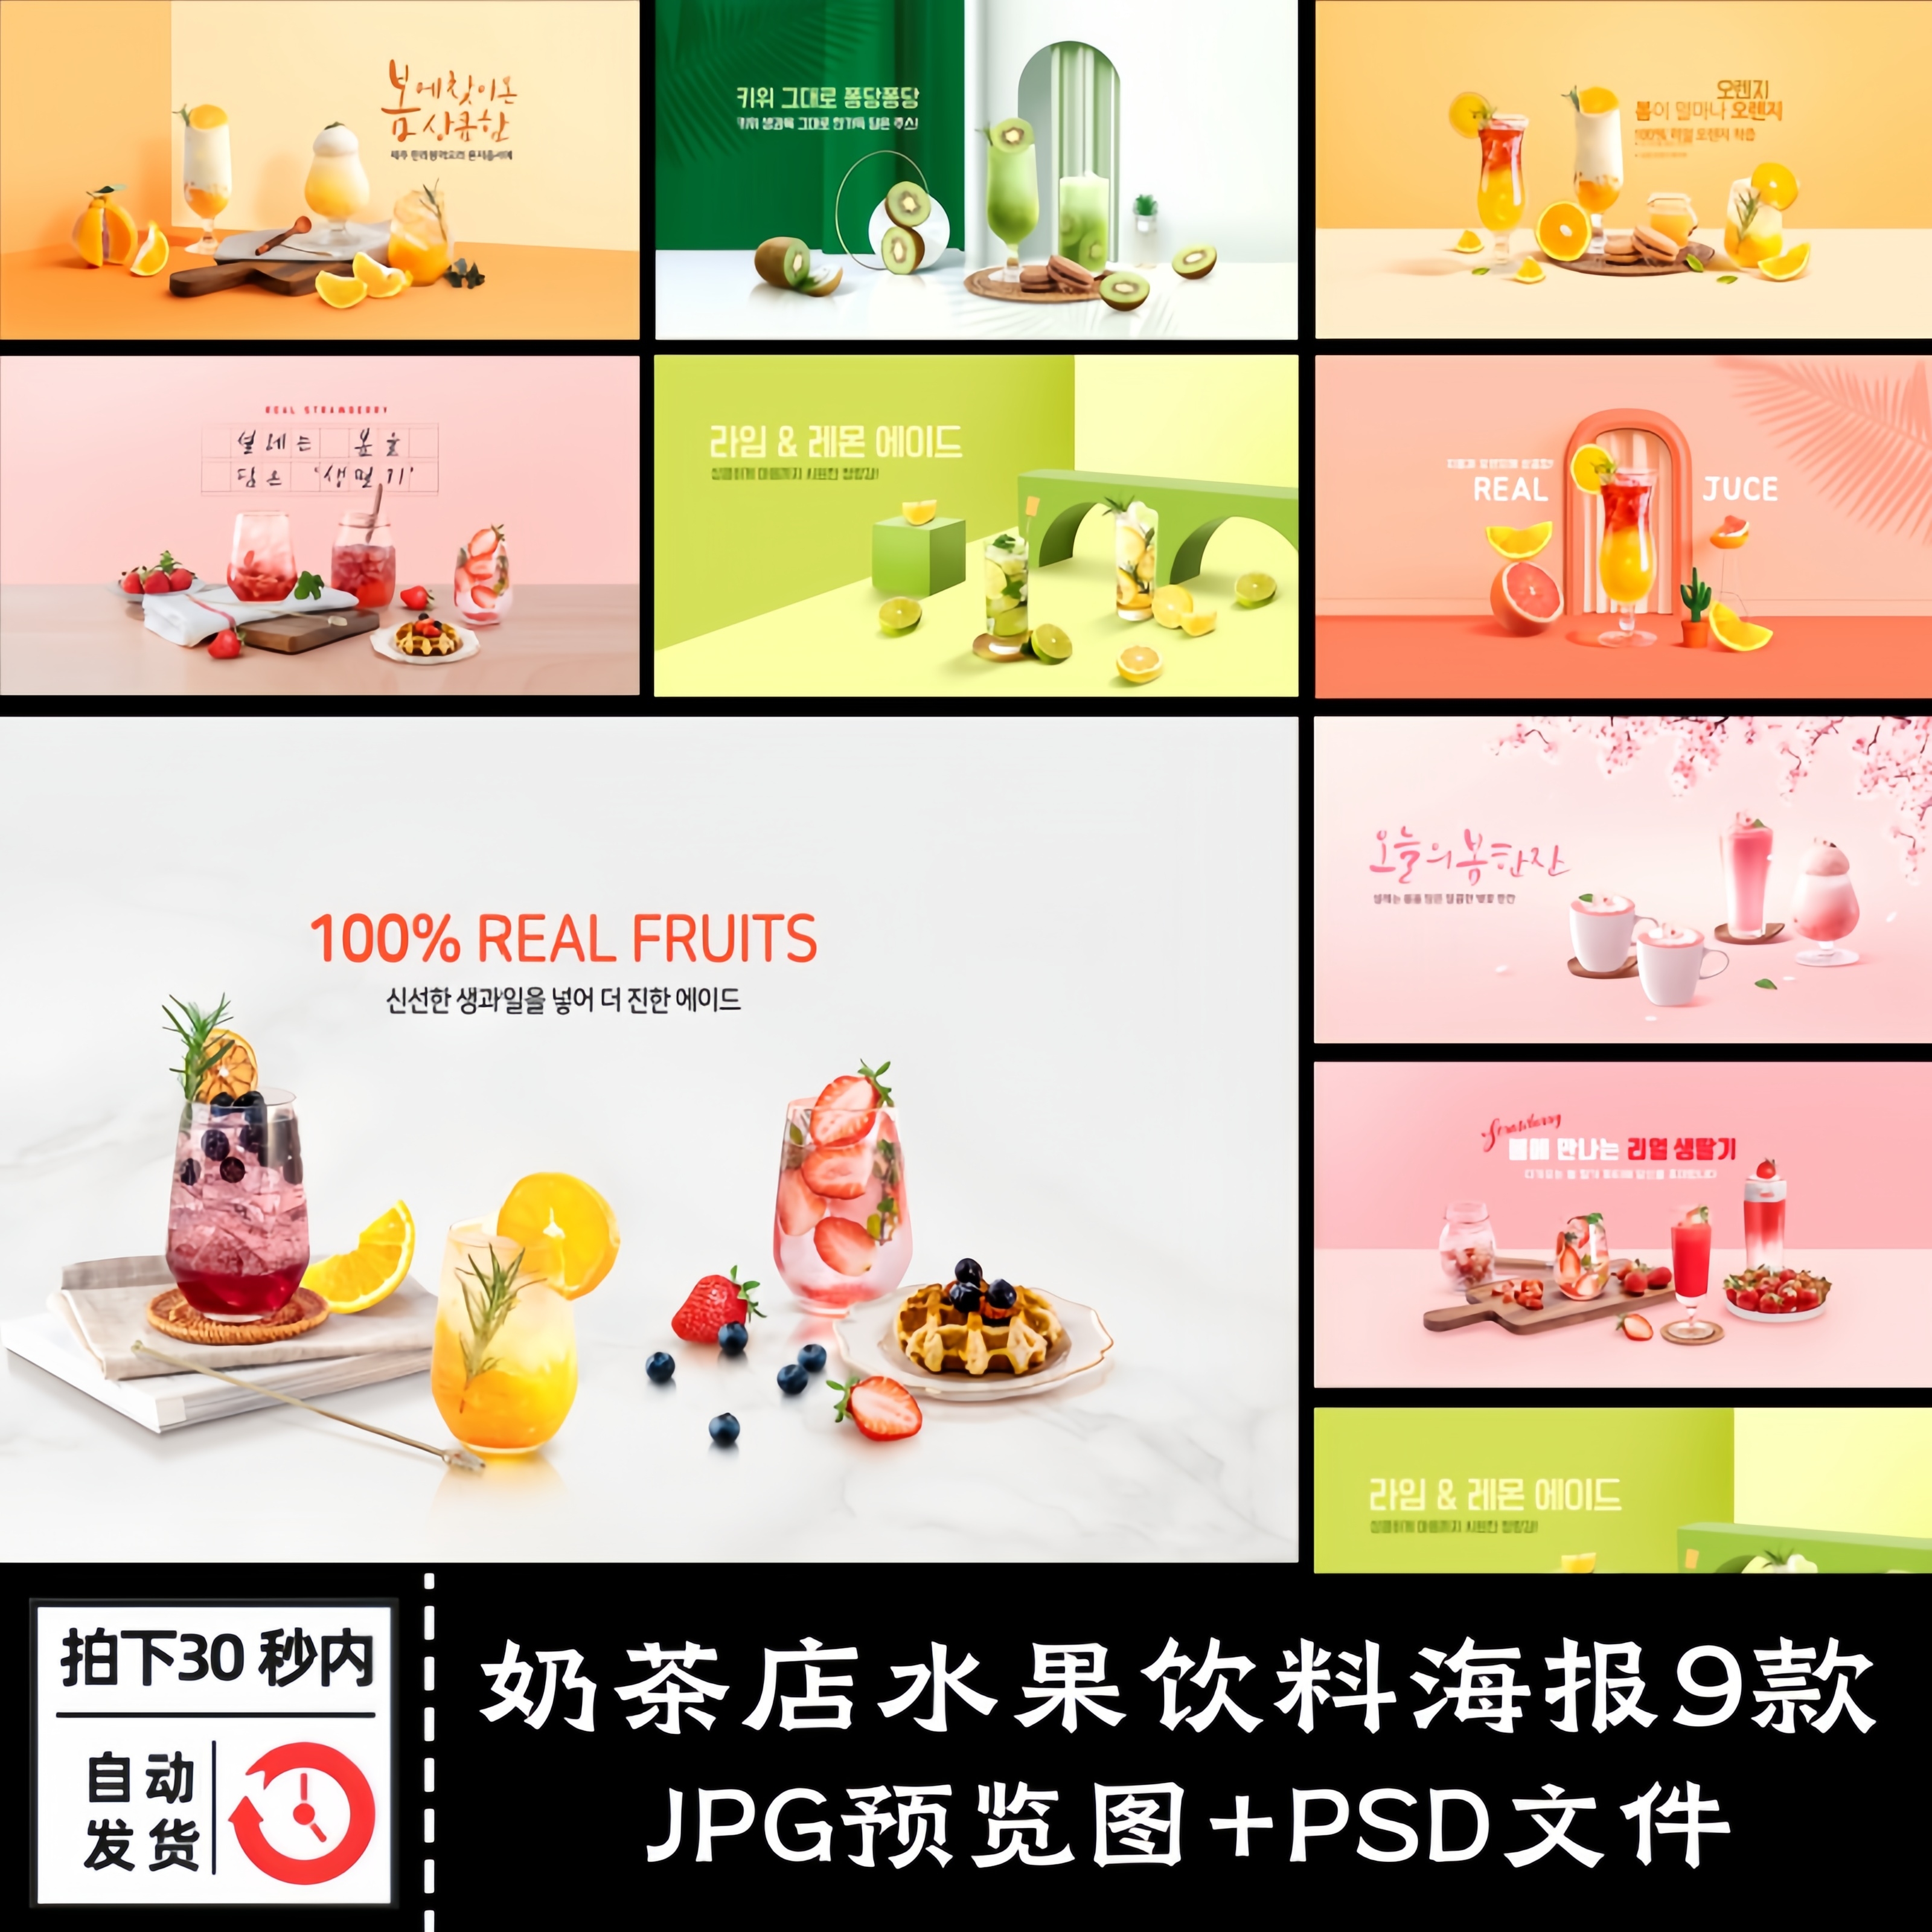 奶茶店水果饮料展示海报创意屏幕背景展示图片PSD分层设计素材